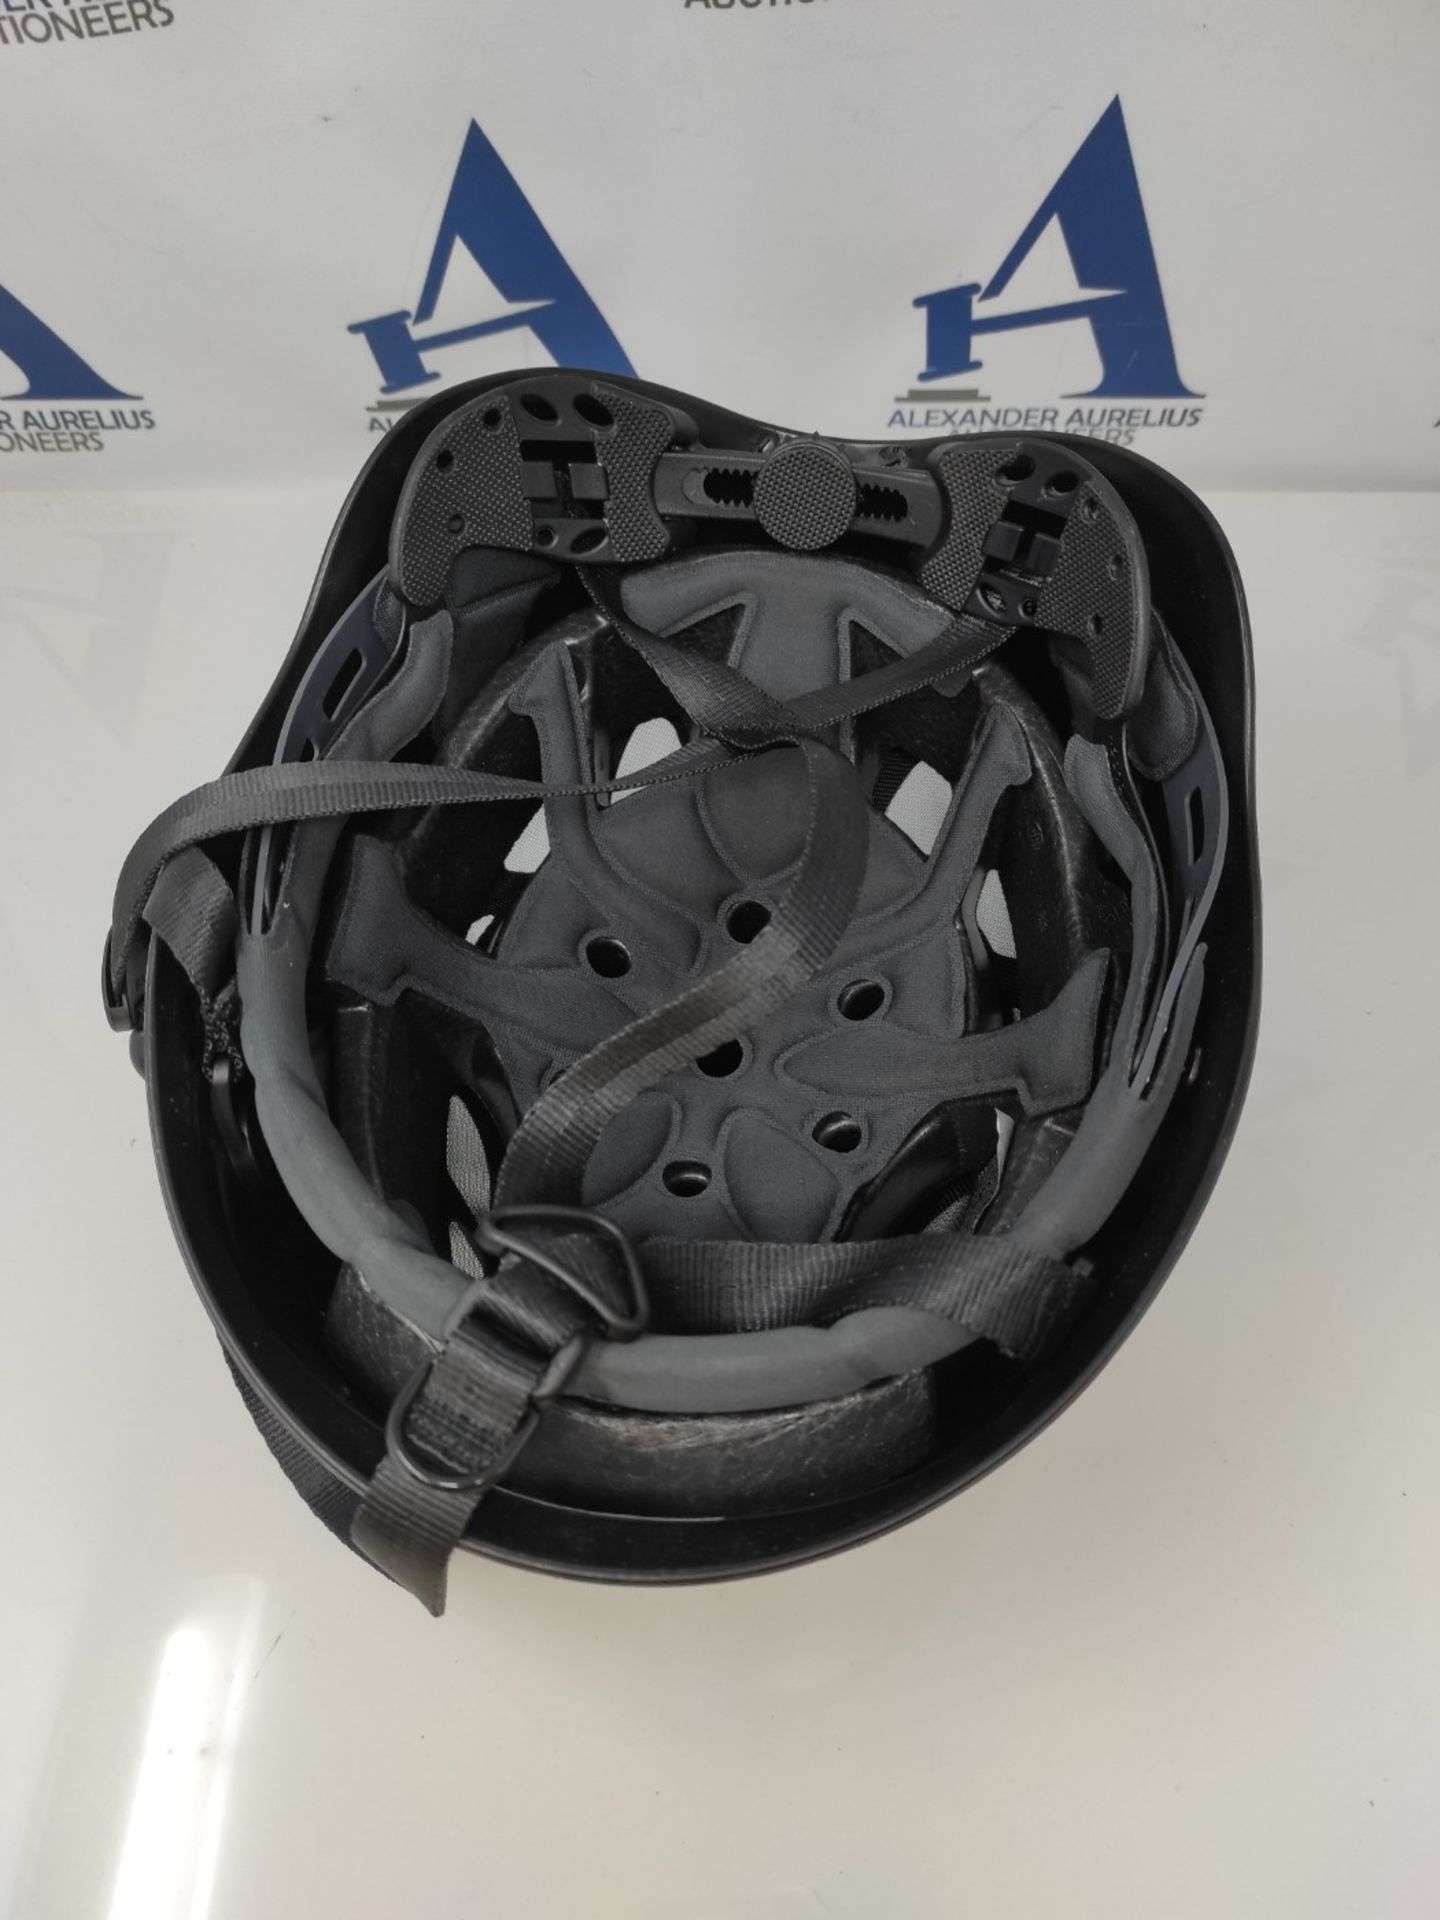 RRP £62.00 Kask AHE00005-210 Size 51-62 cm "Superplasma PL" Helmet - Black - Image 3 of 3